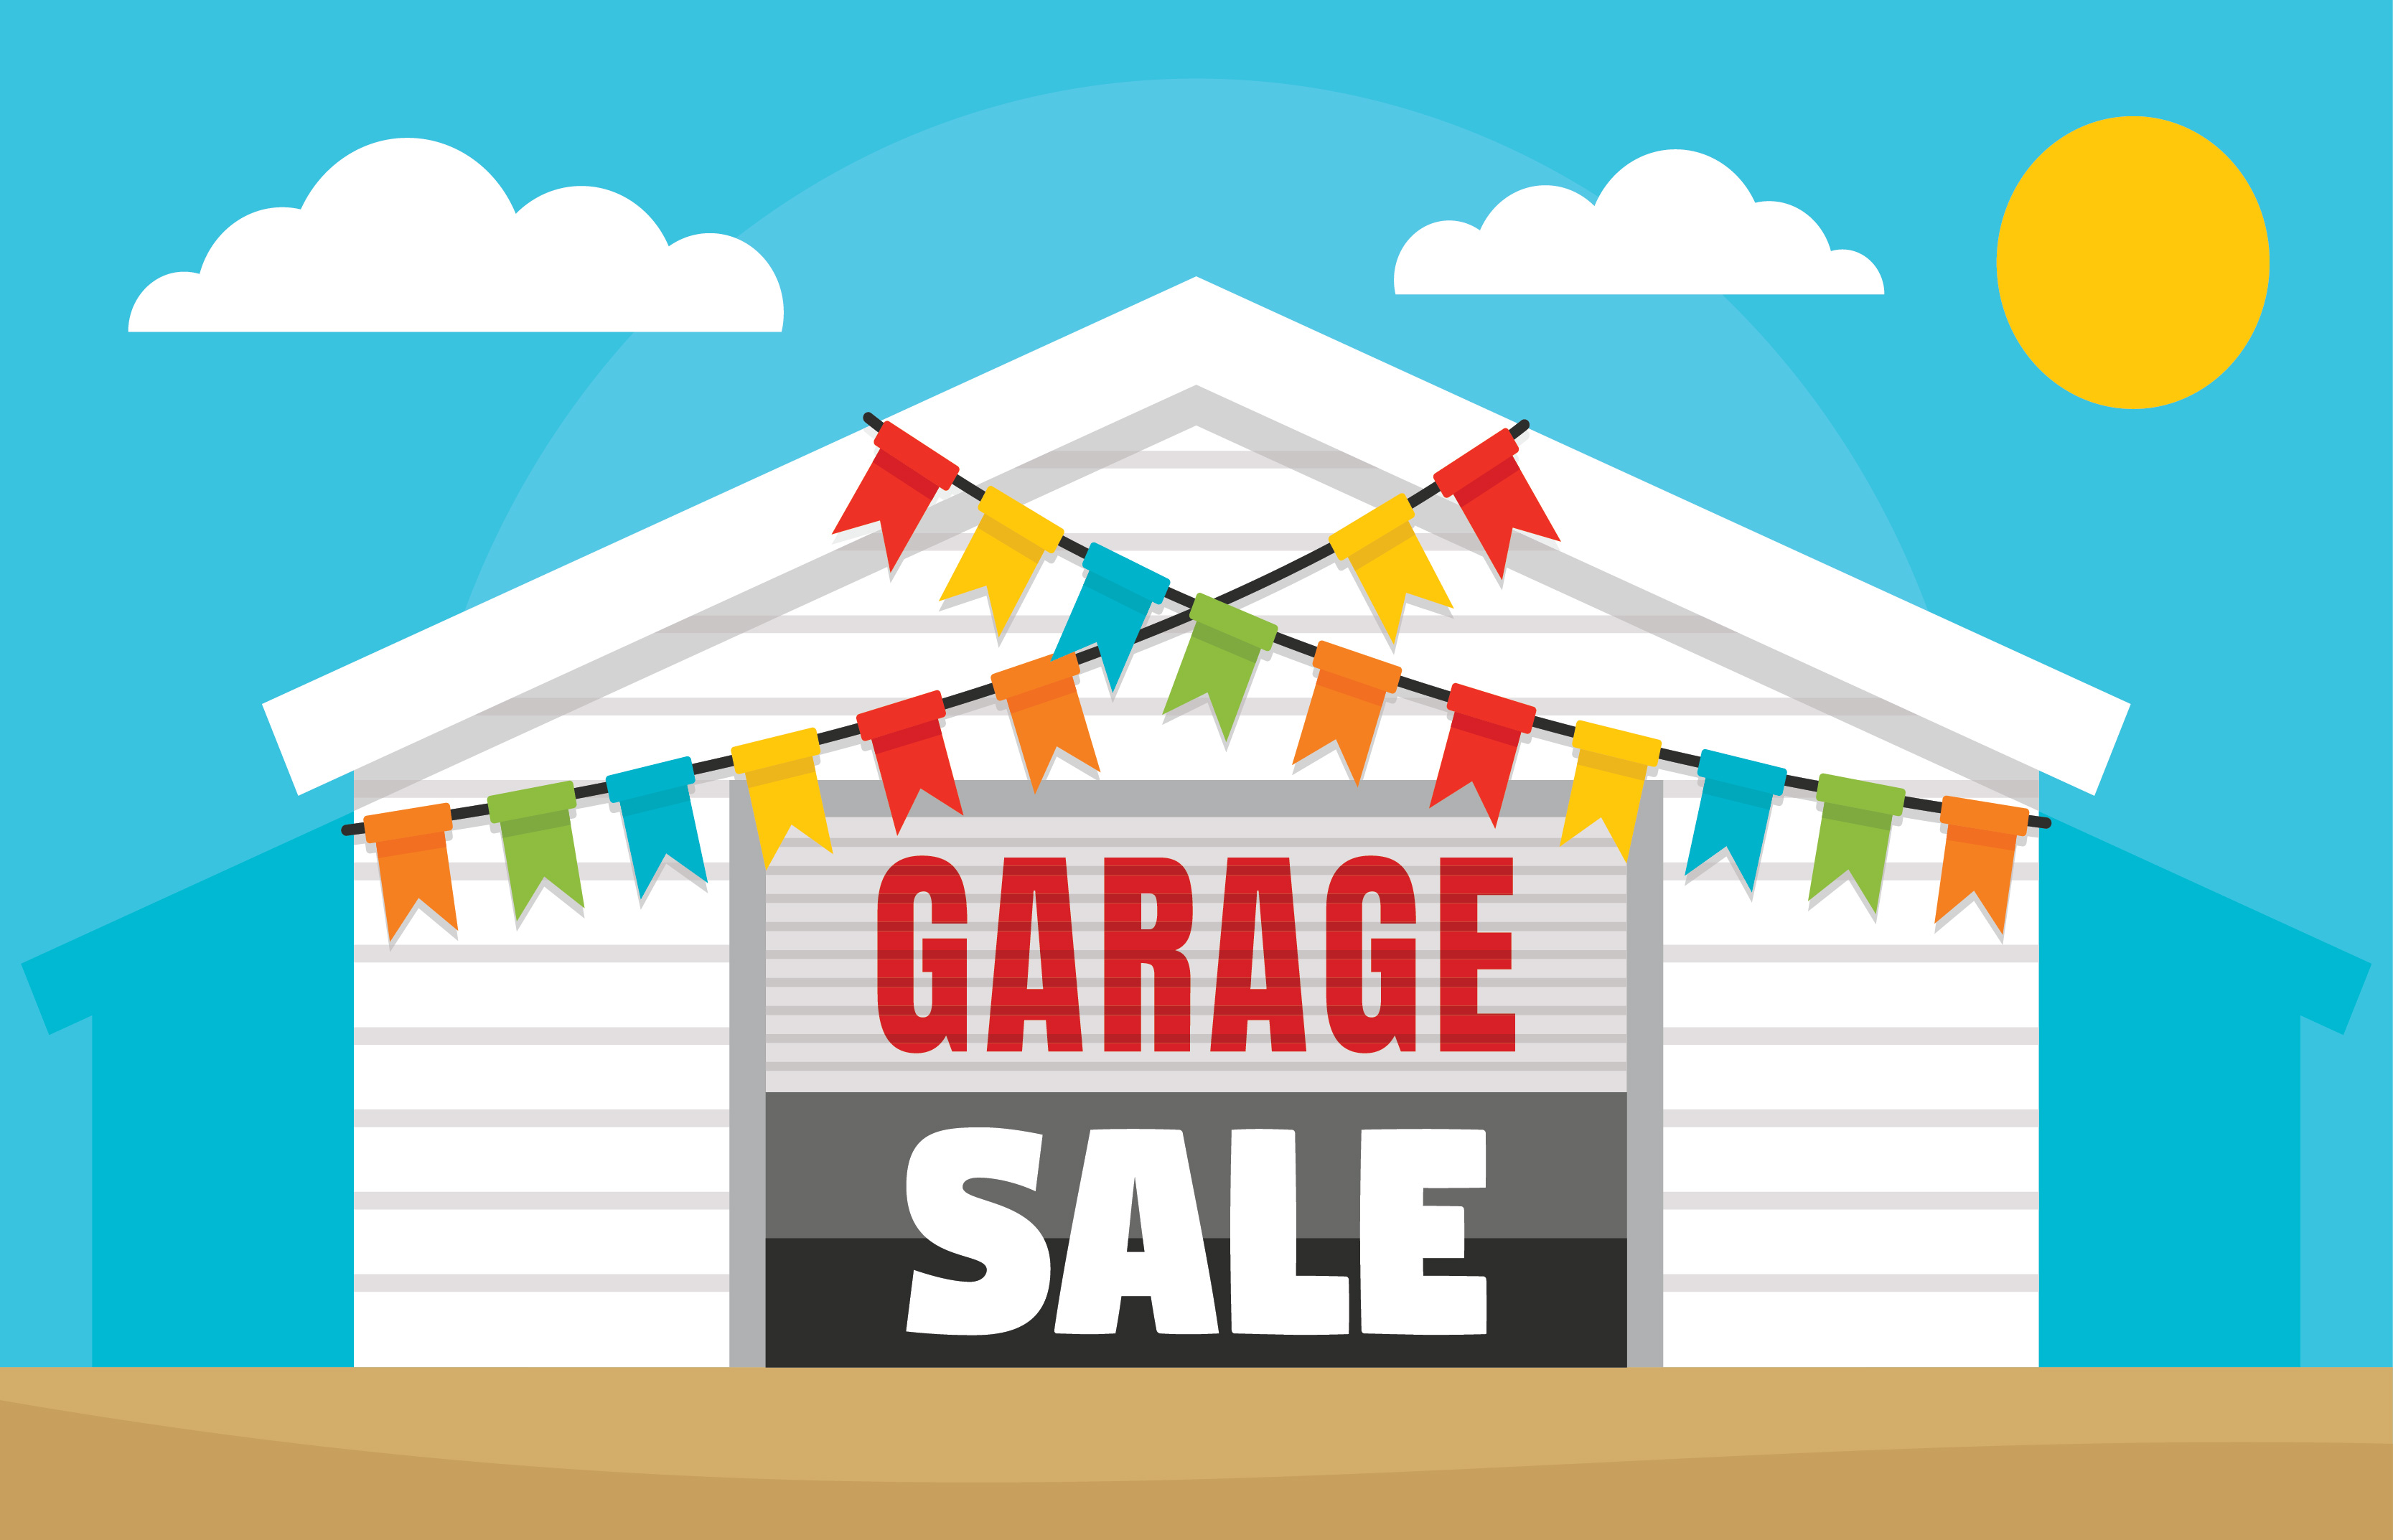 Hearthstone Community Garage Sale Set for April 13